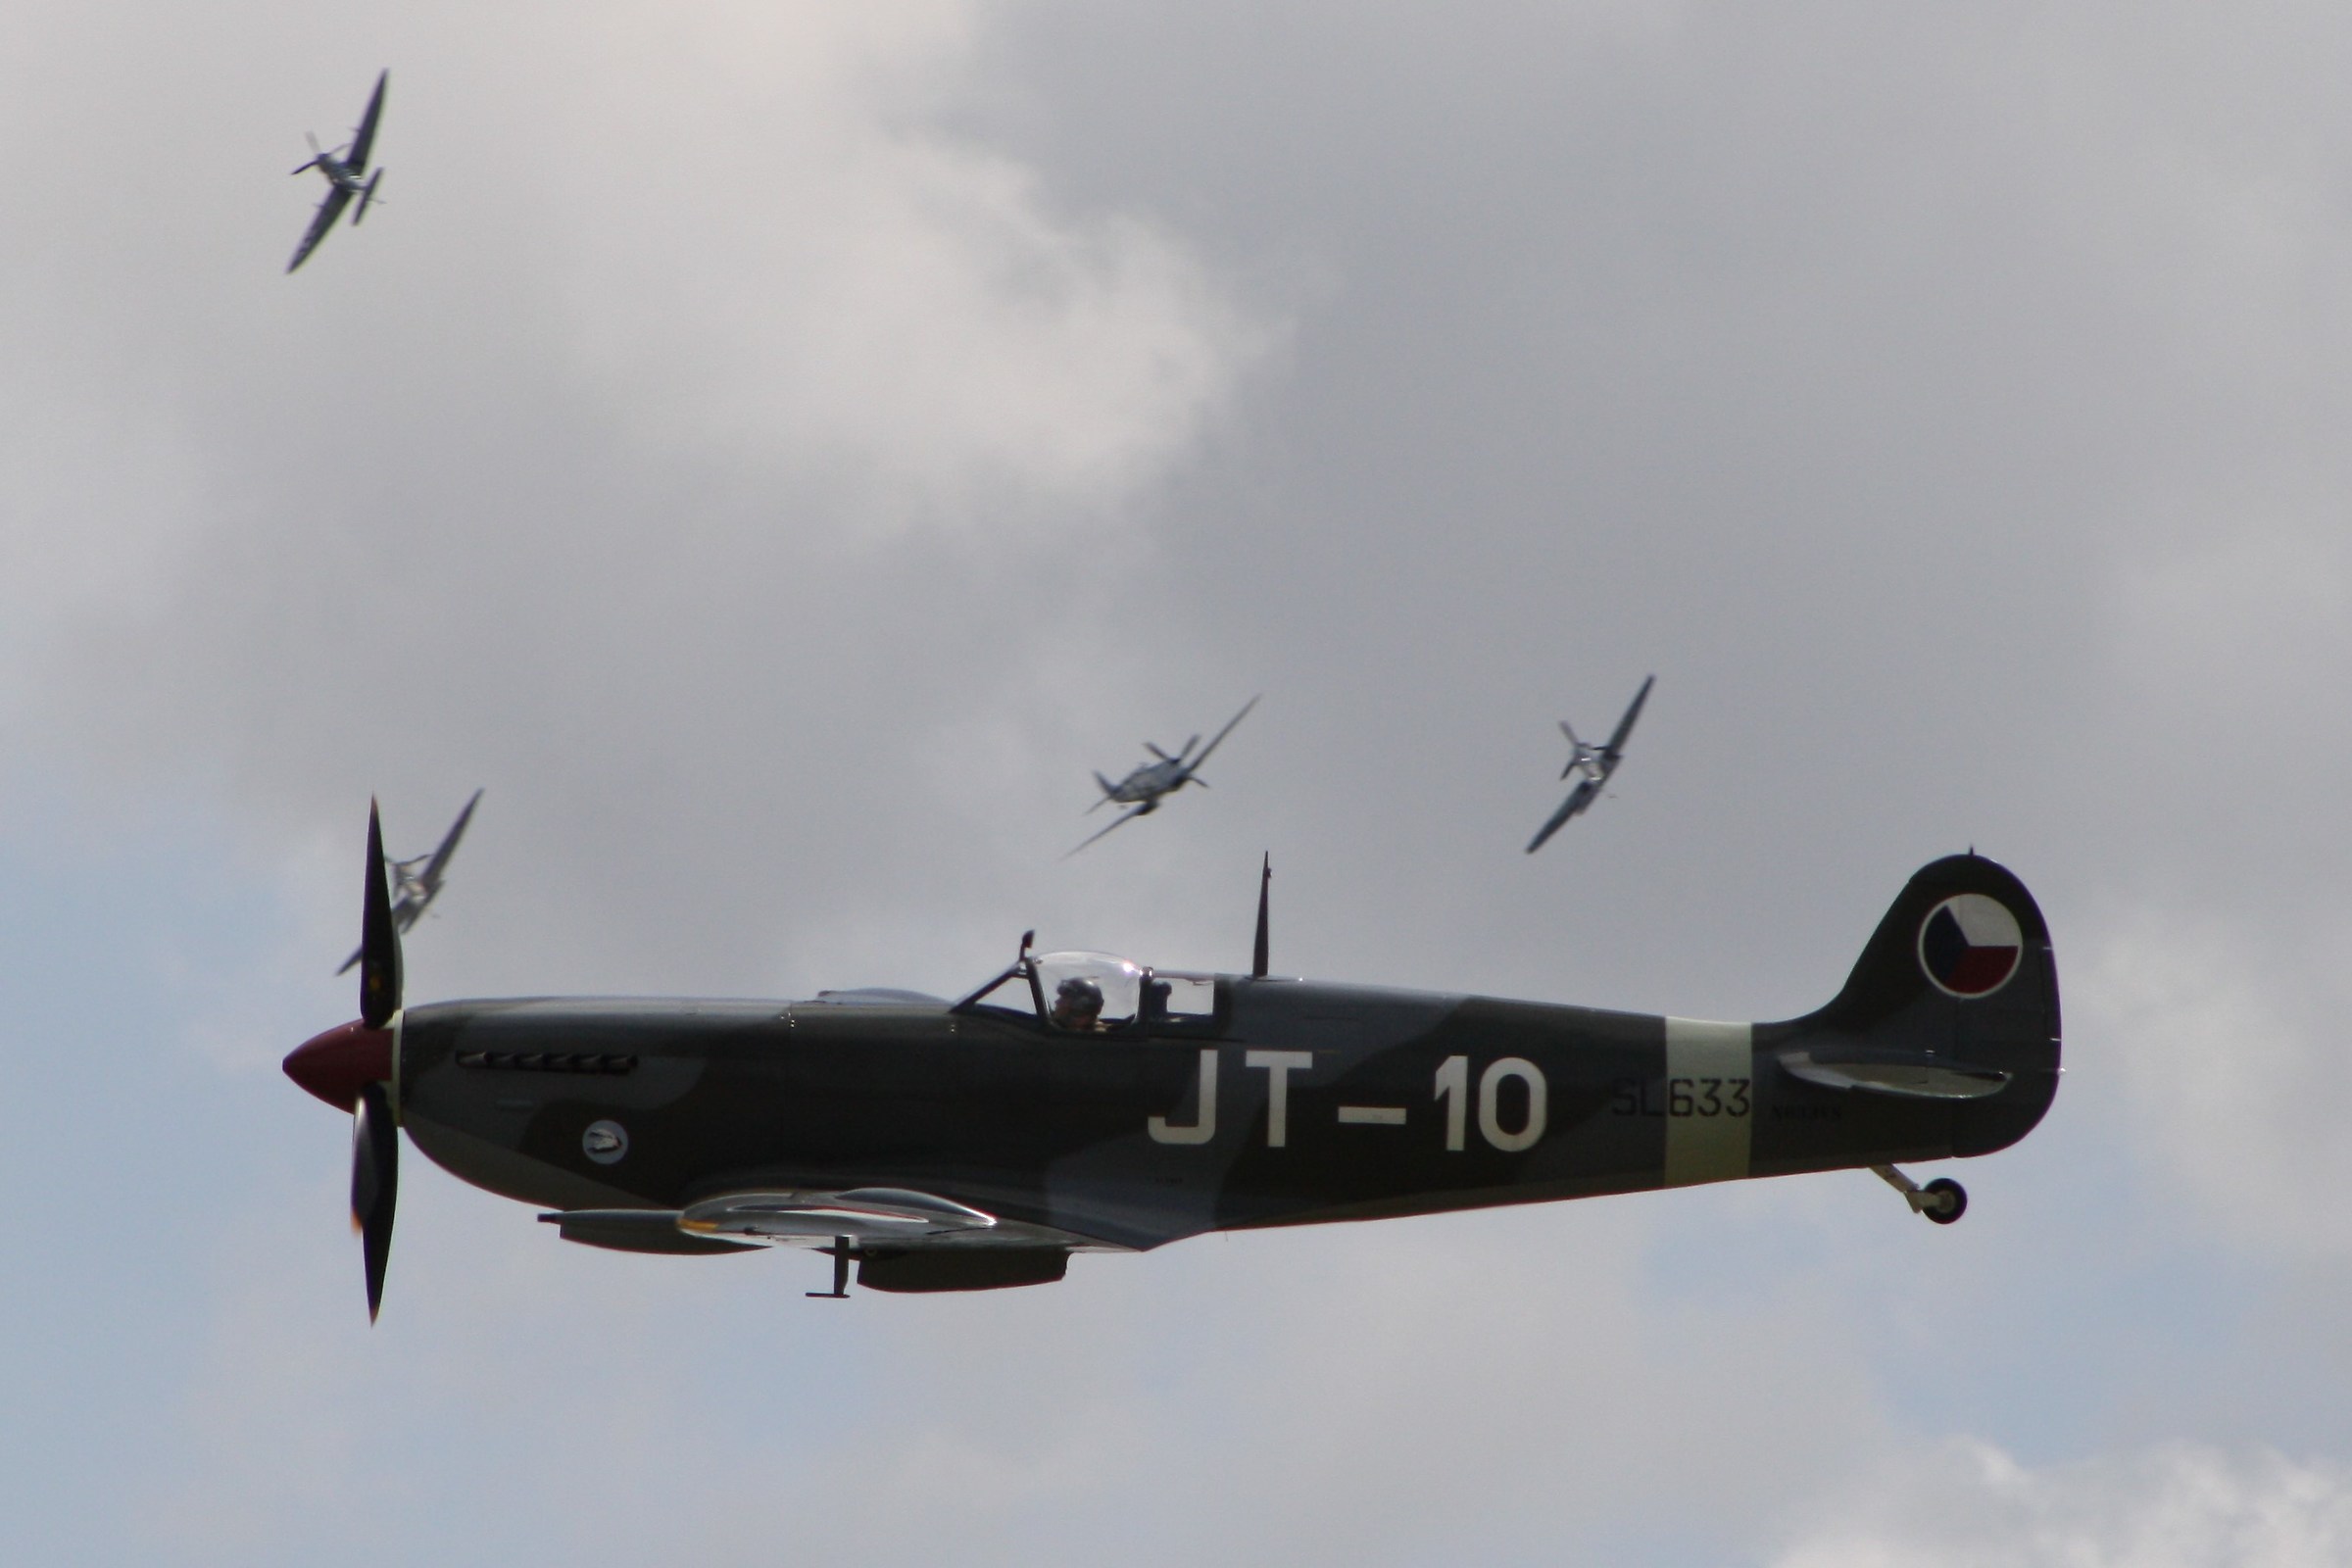 Spitfire Flying Legend in 2015...